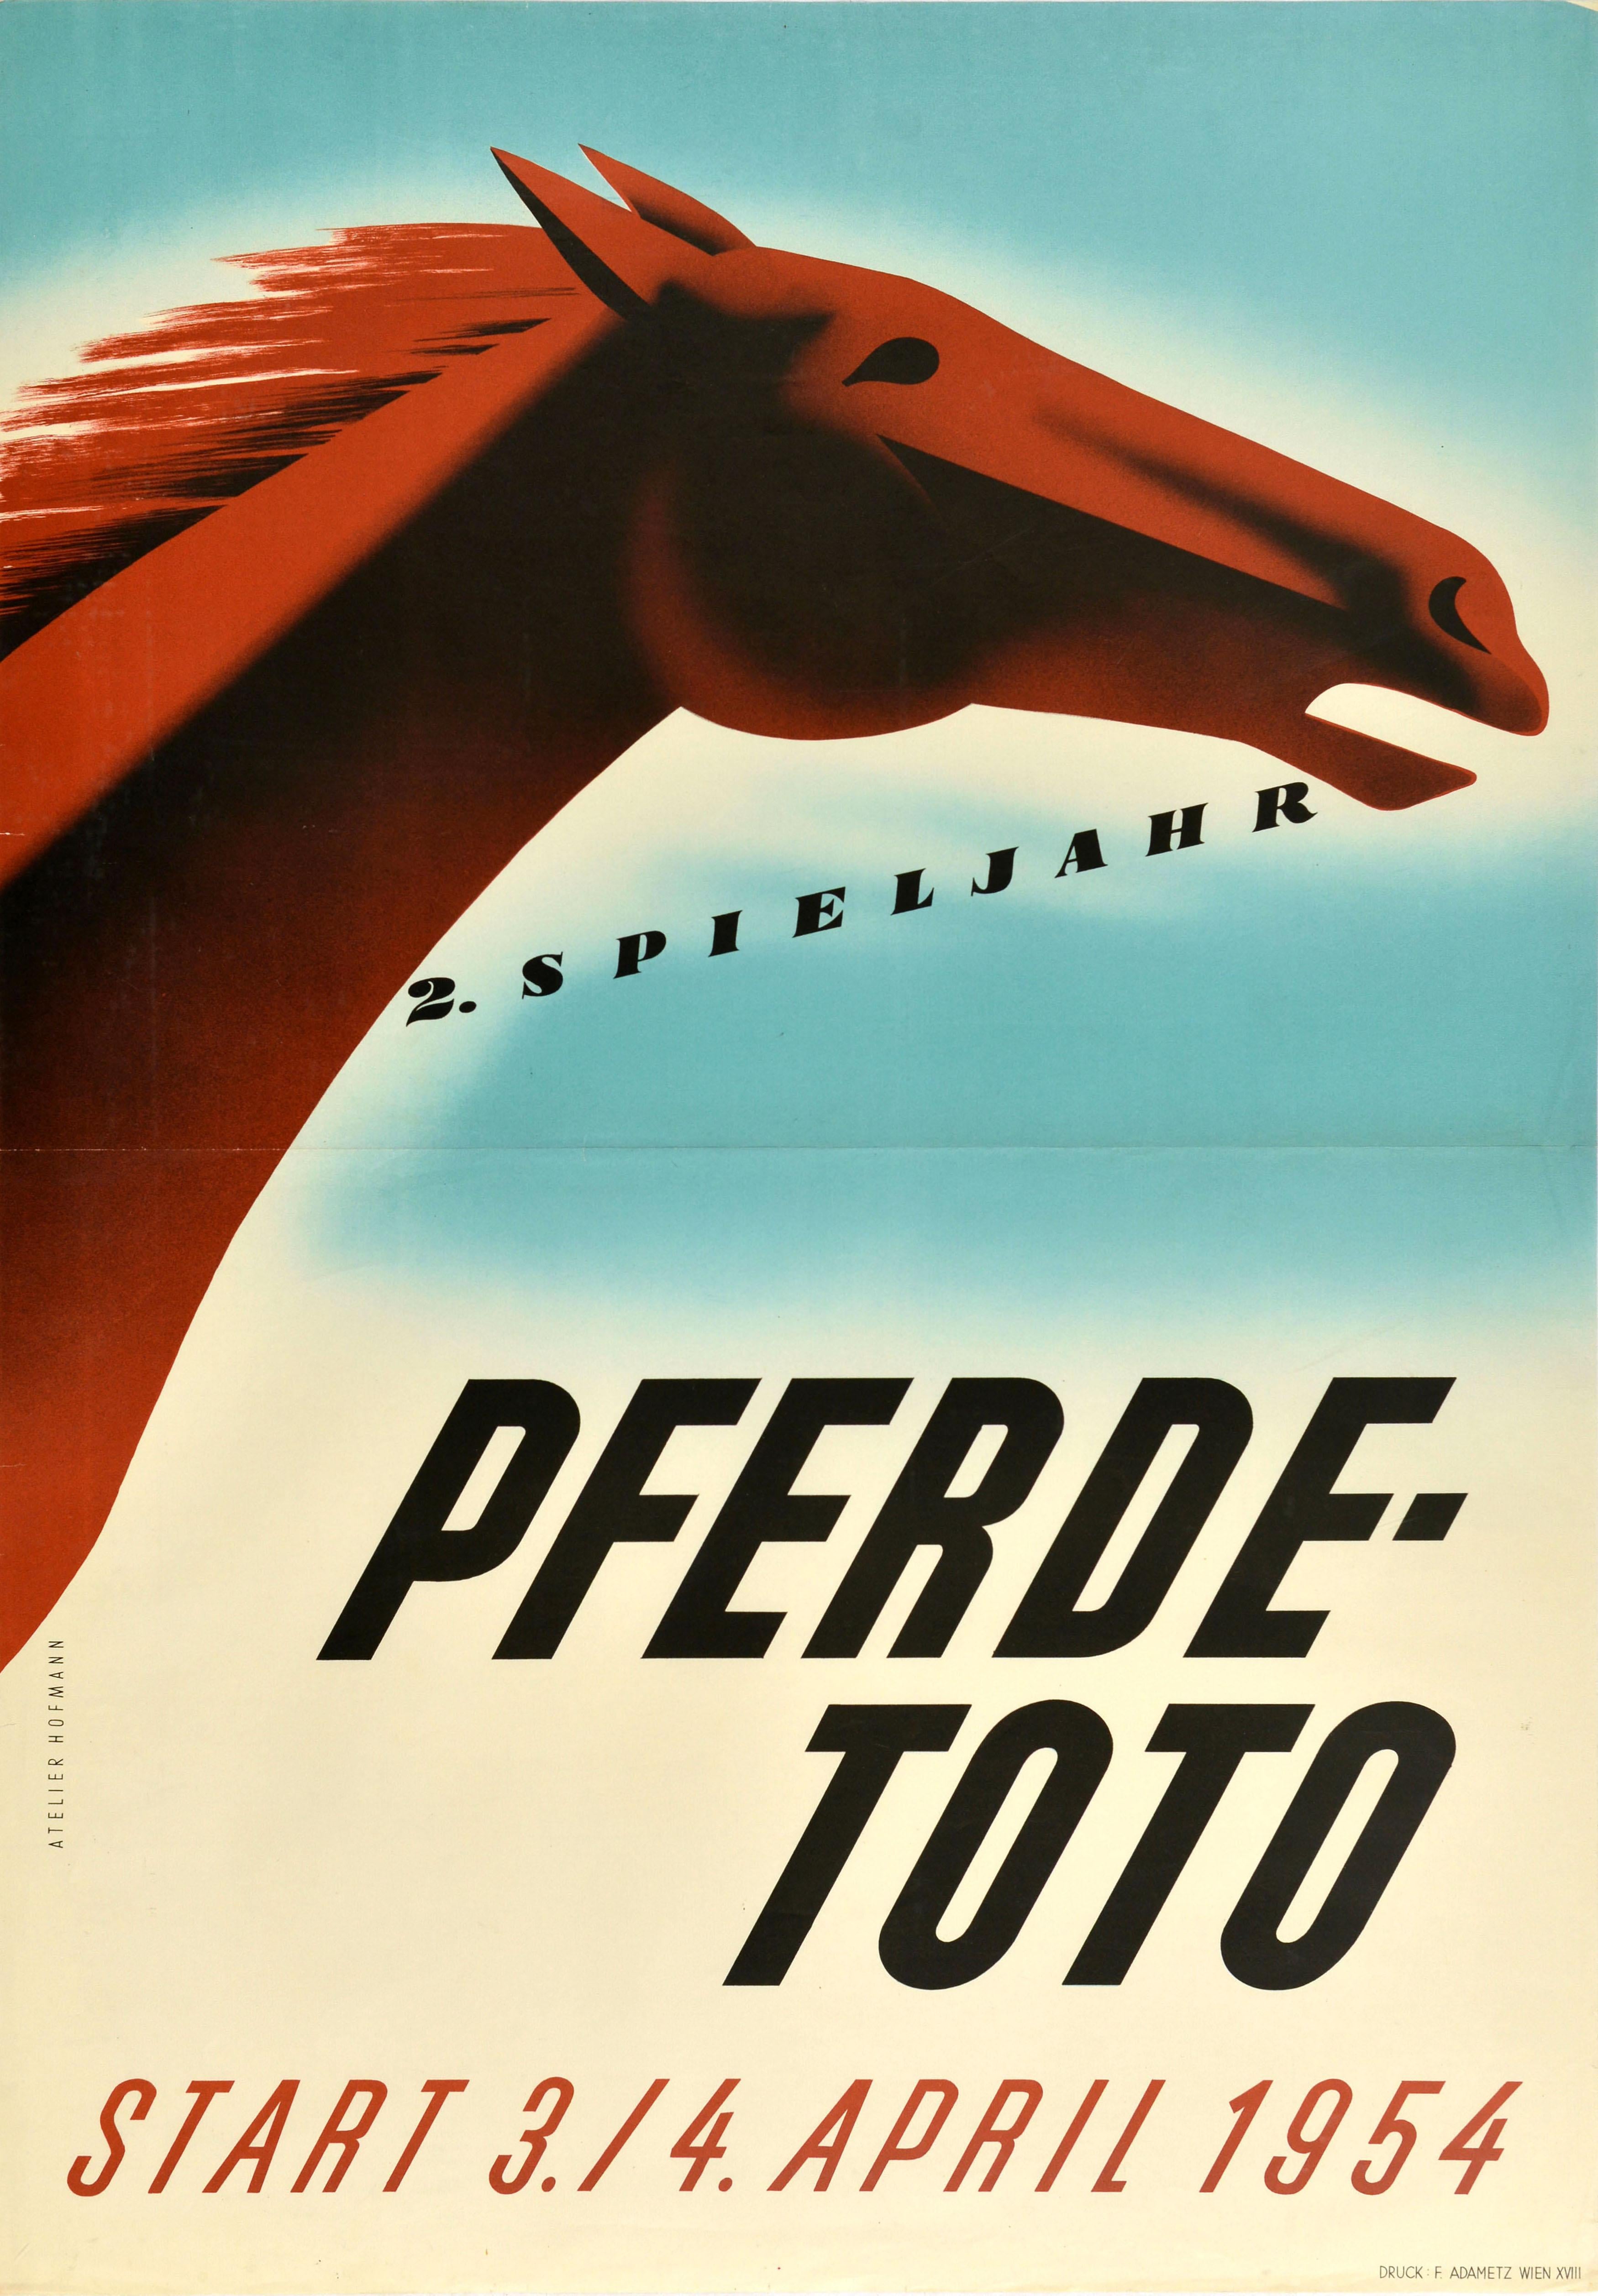 Atelier Hofmann Print - Original Vintage Horse Racing Poster Pferde Toto 1954 Horse Pools Austria Sport